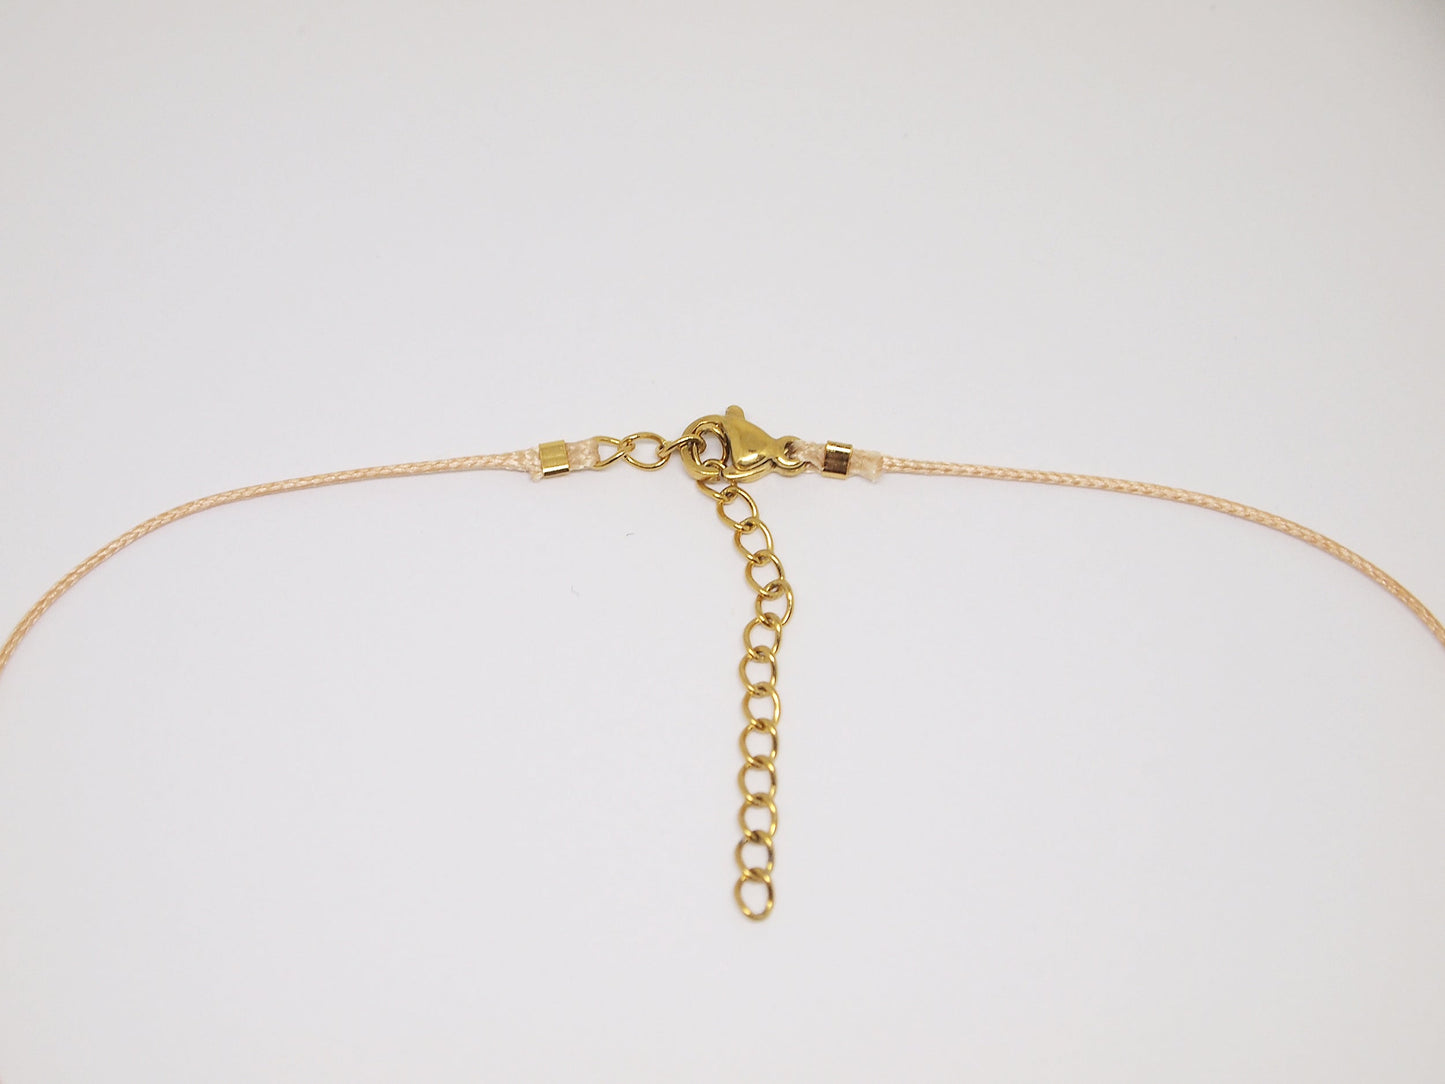 Rose quartz cord necklace